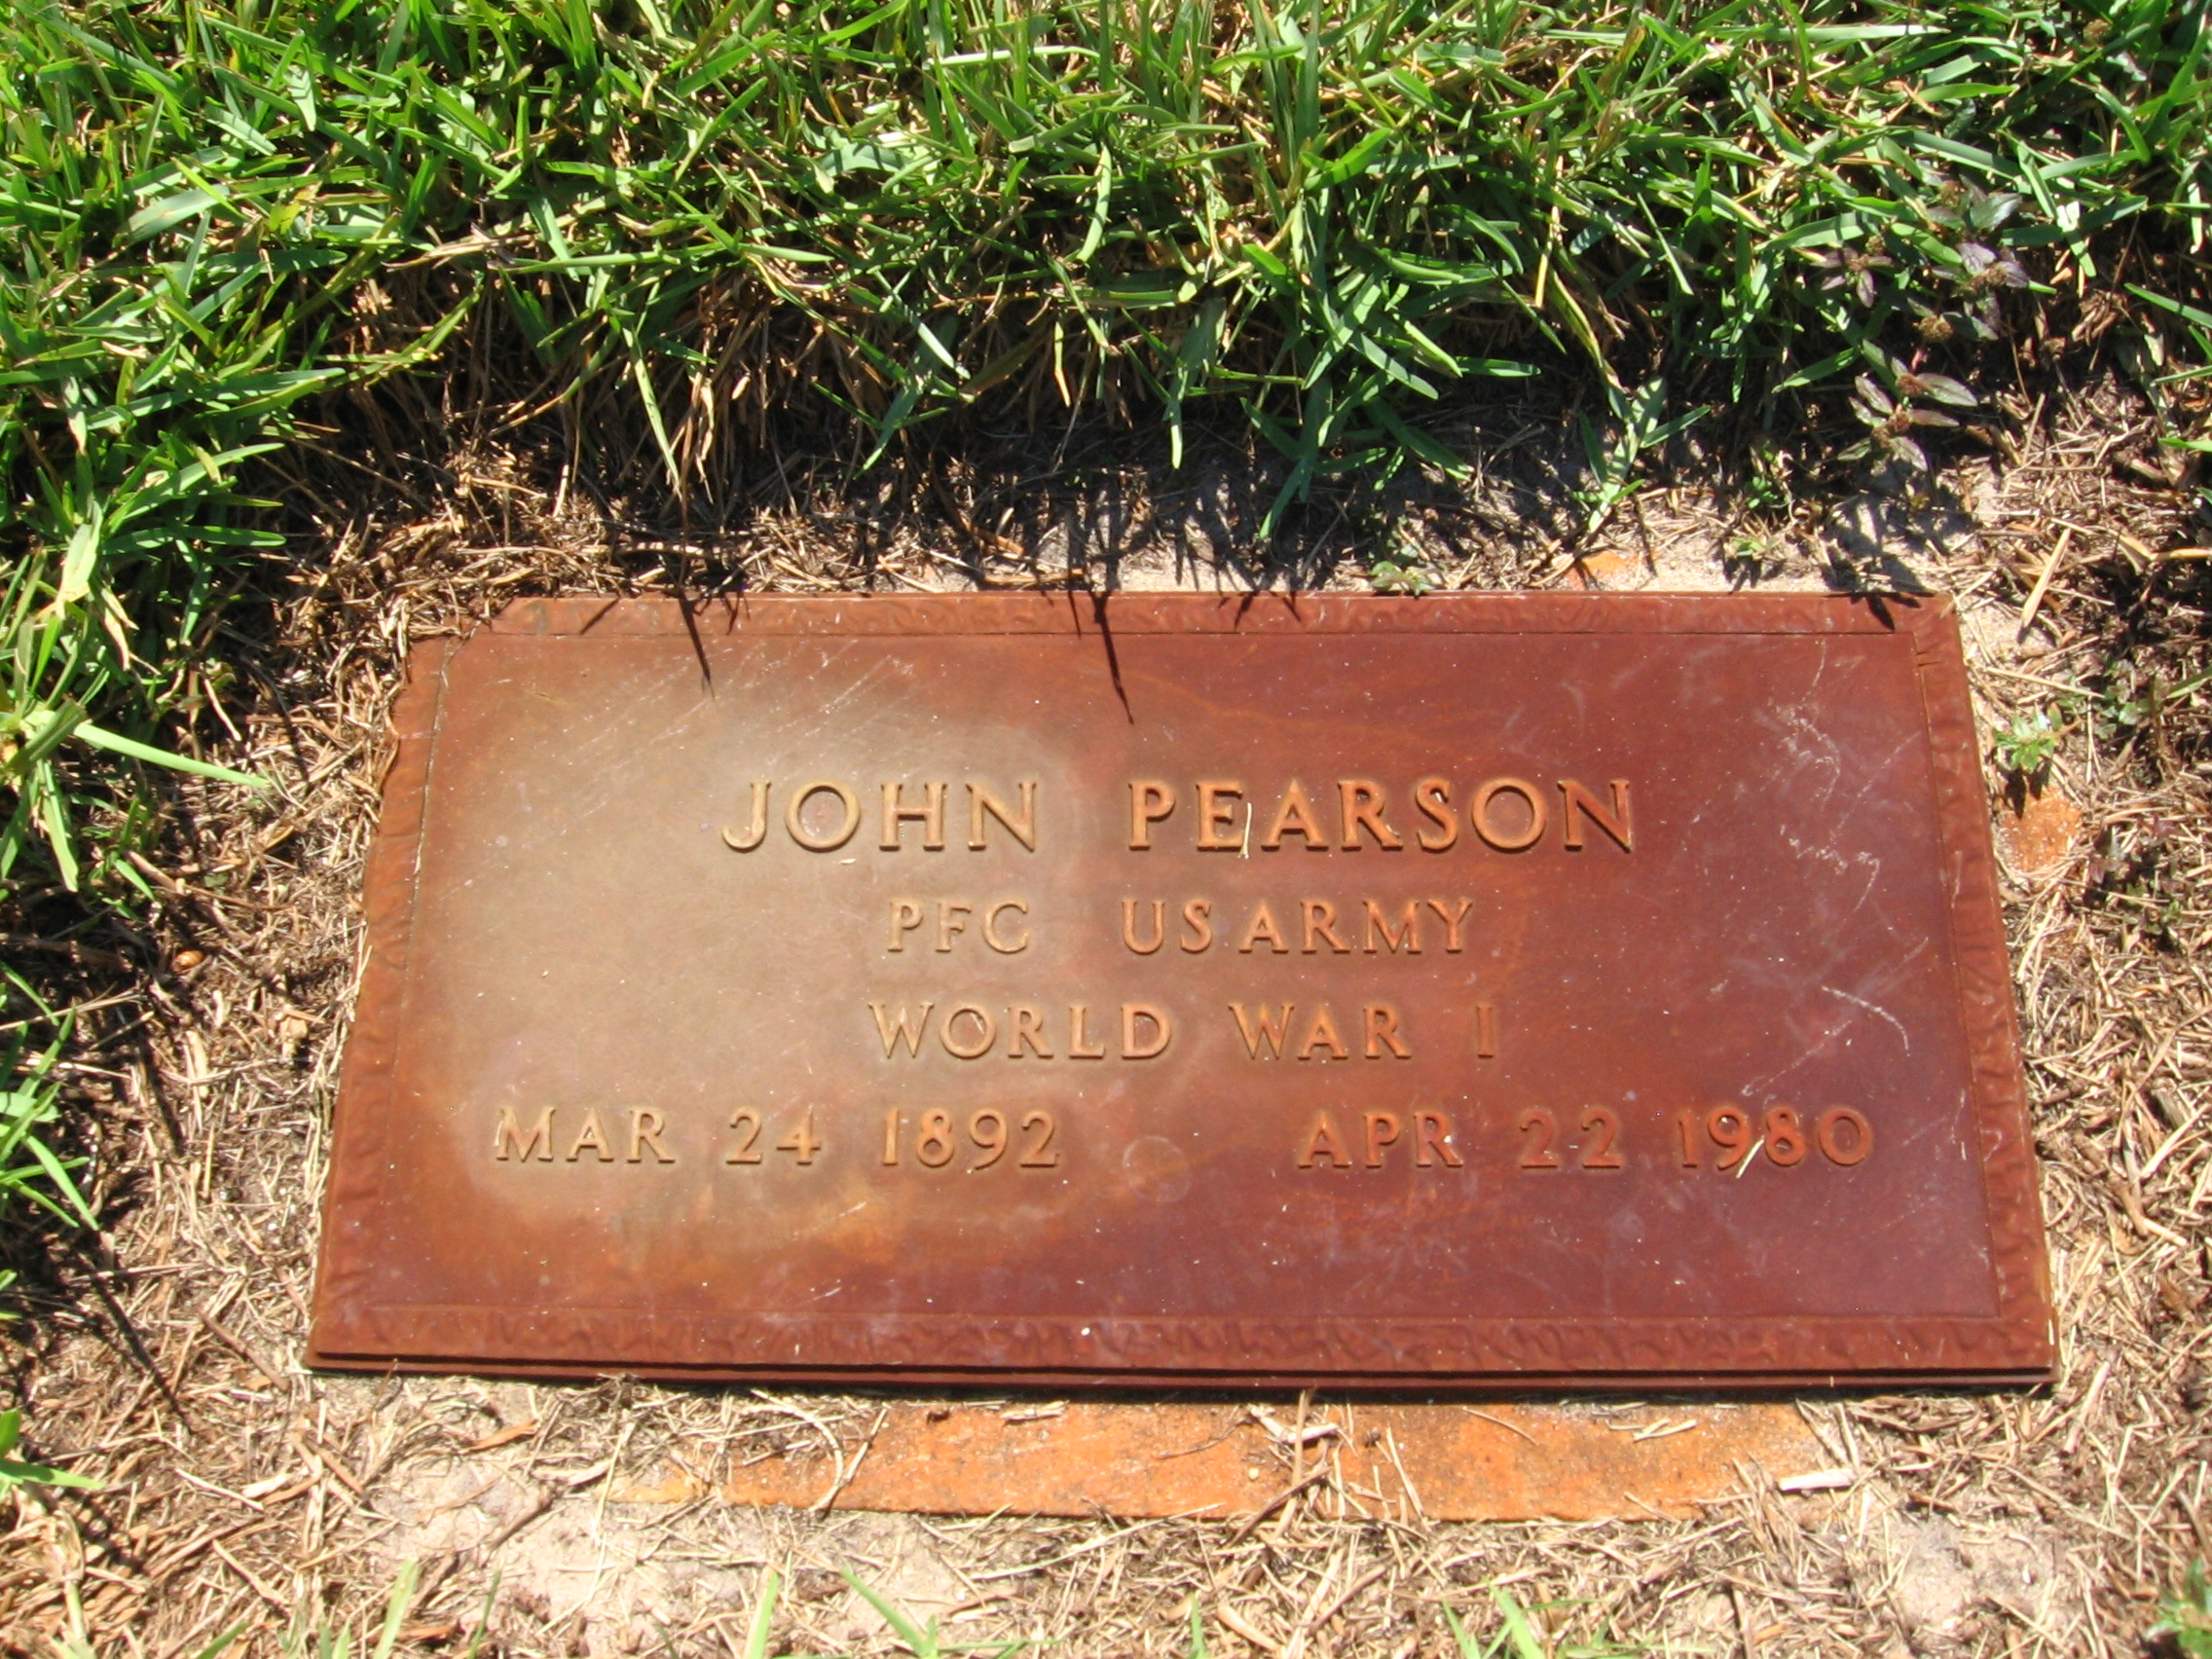 PFC John Pearson